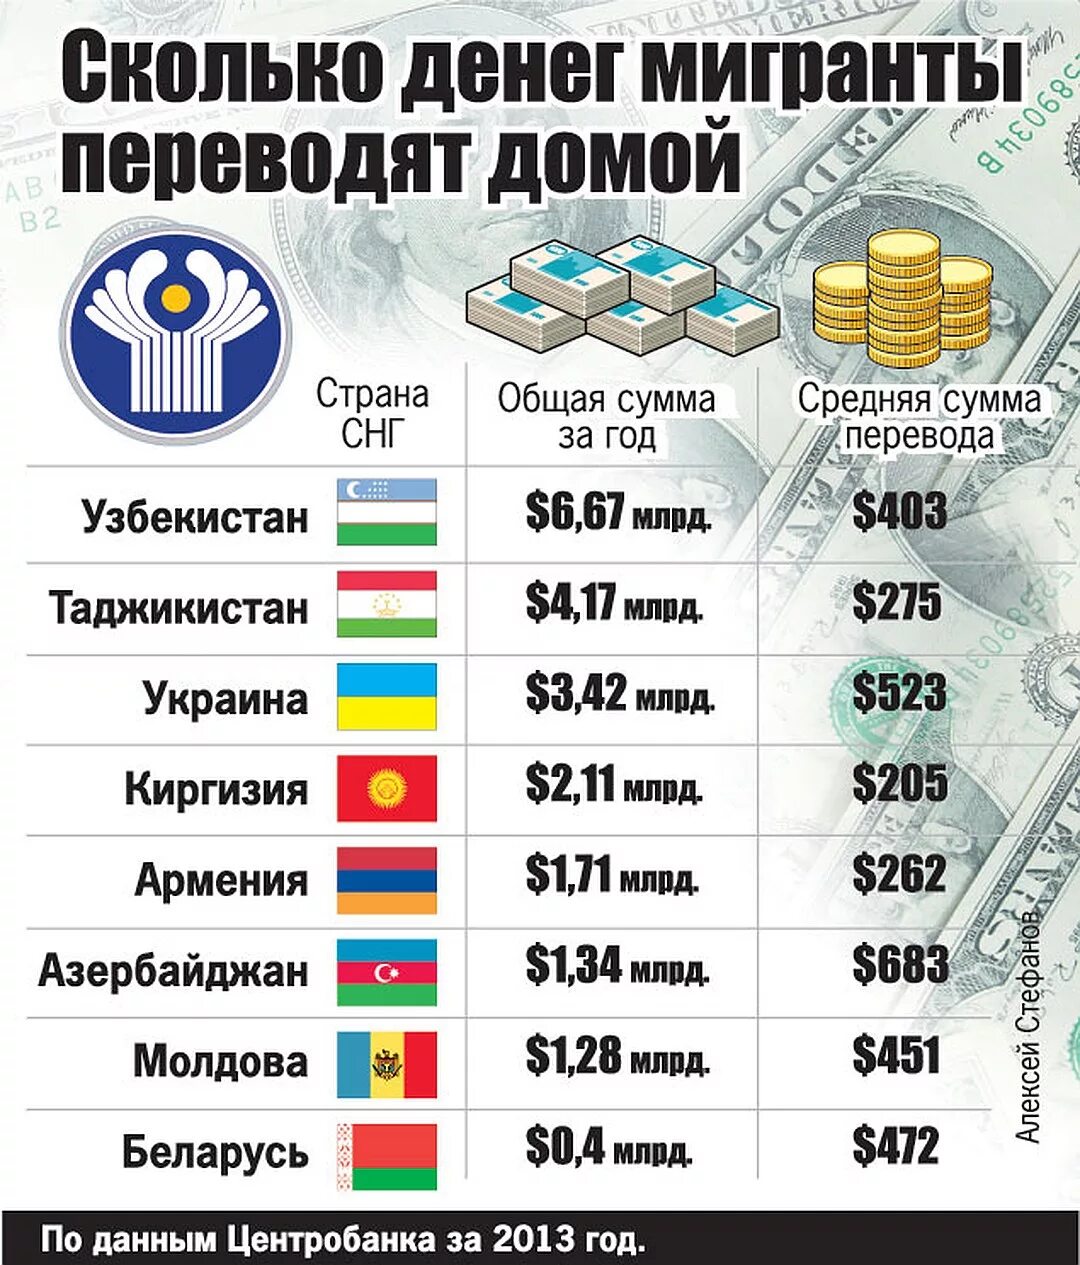 Узбекистан отправить сколько